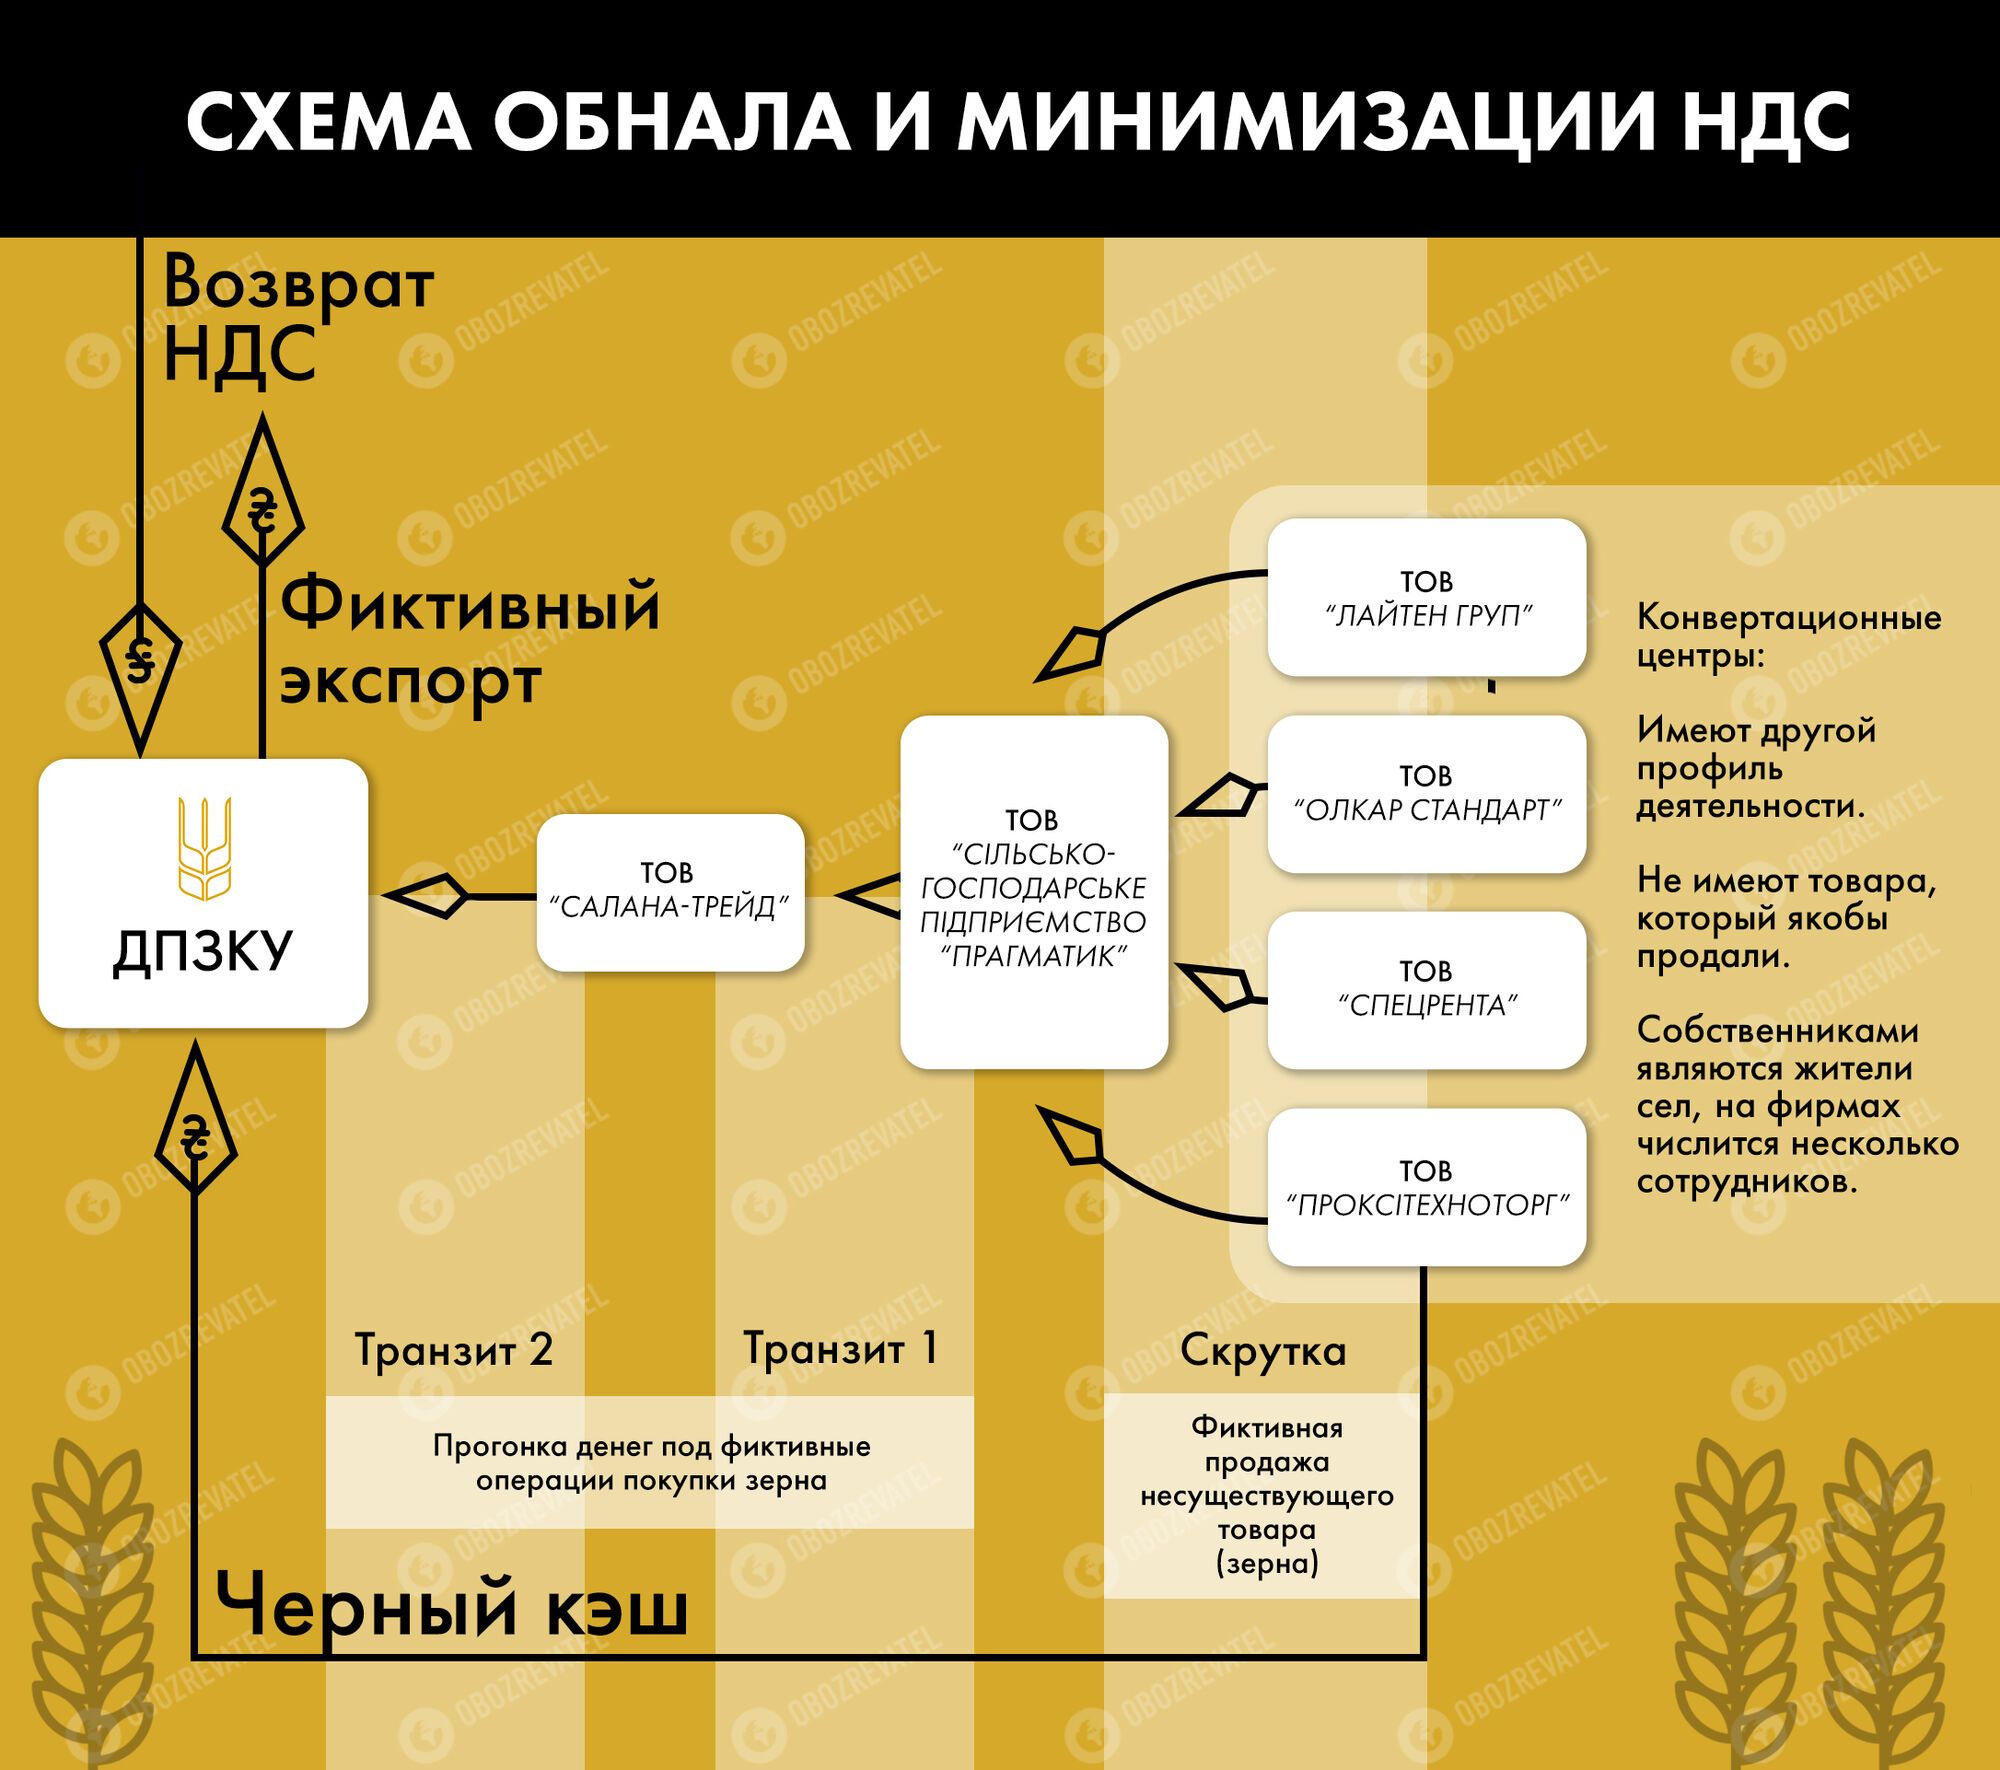 Схемы отмыва, воровства НДС и другие махинации: кто ответит за преступления Государственной прод-зерновой корпорации Украины (ГПЗКУ)